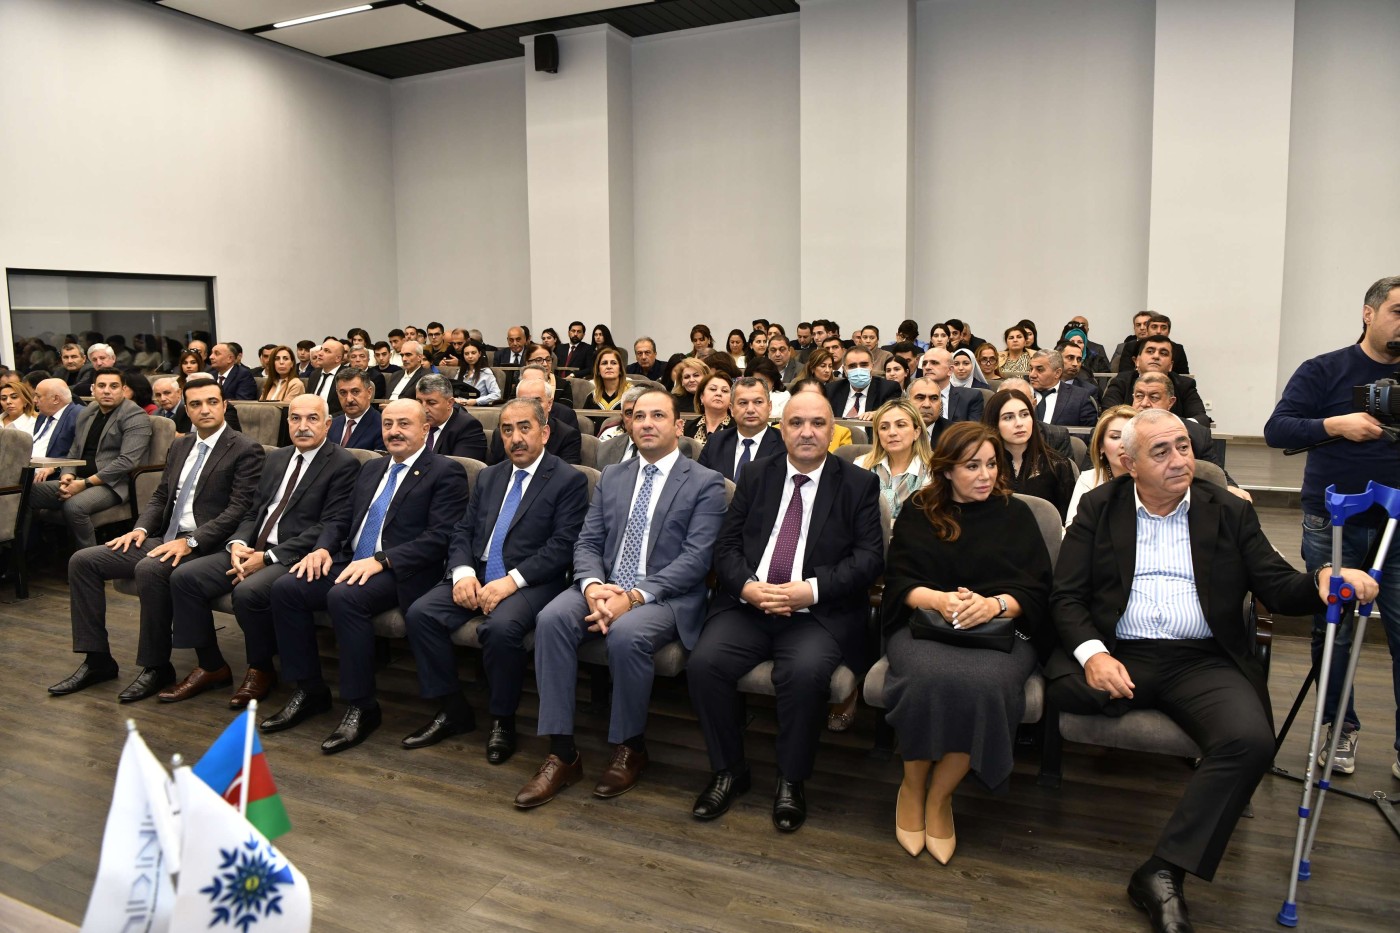 ADNSU-da “Azərbaycan son 20 ildə” adlı tədbir keçirildi - FOTOLAR